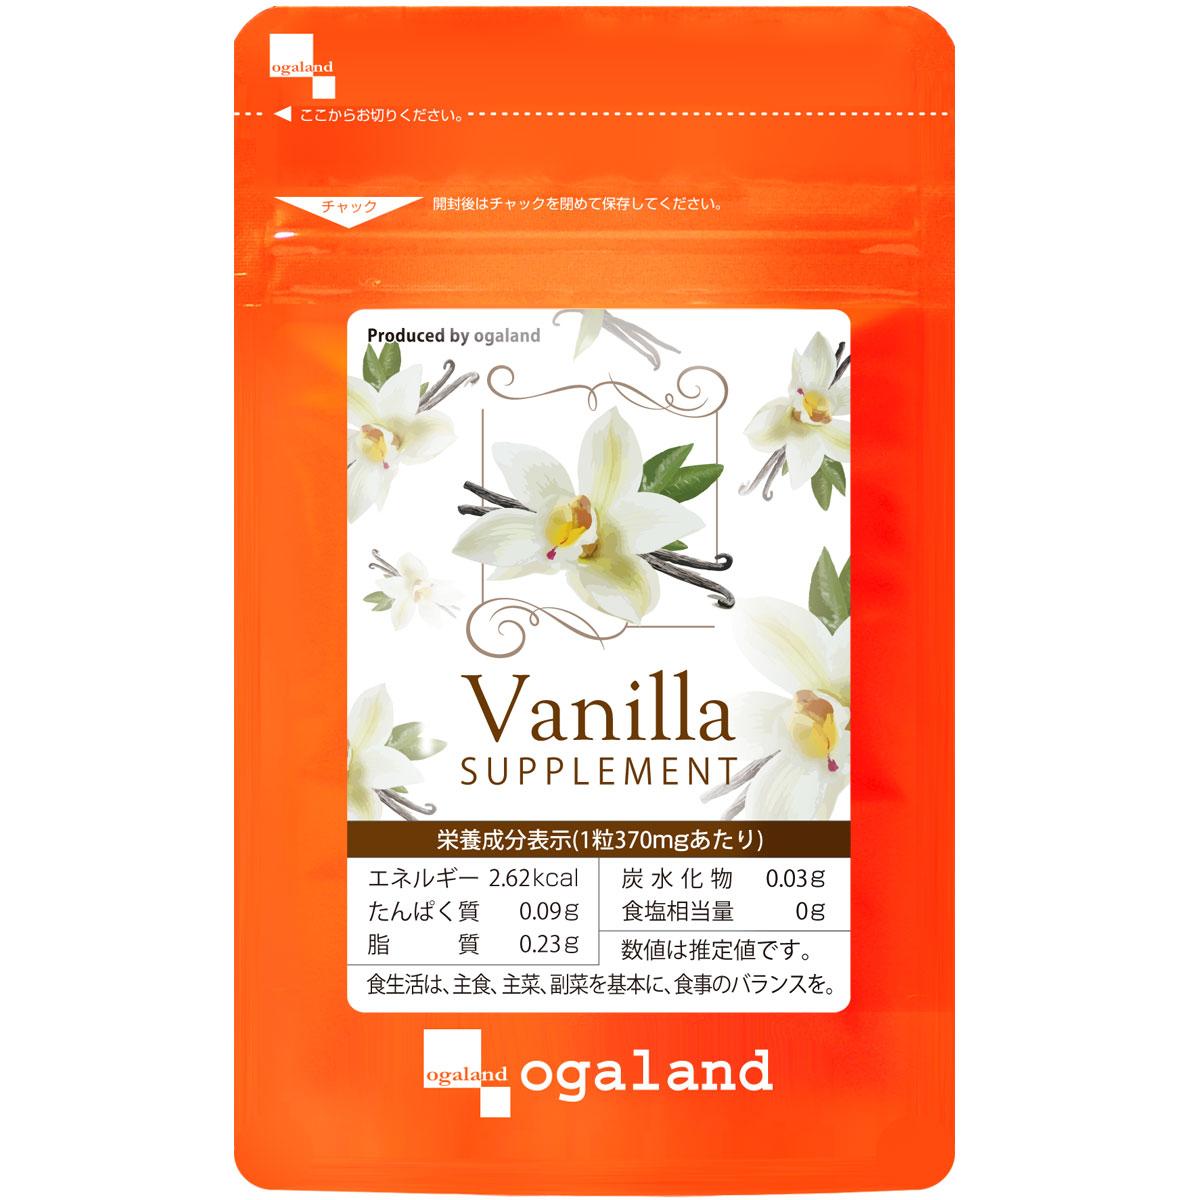 Ogaland Vanilla їстівні парфуми для поліпшення запаху тіла з олією ванілі та цінними інгредієнтами, 30 капсул